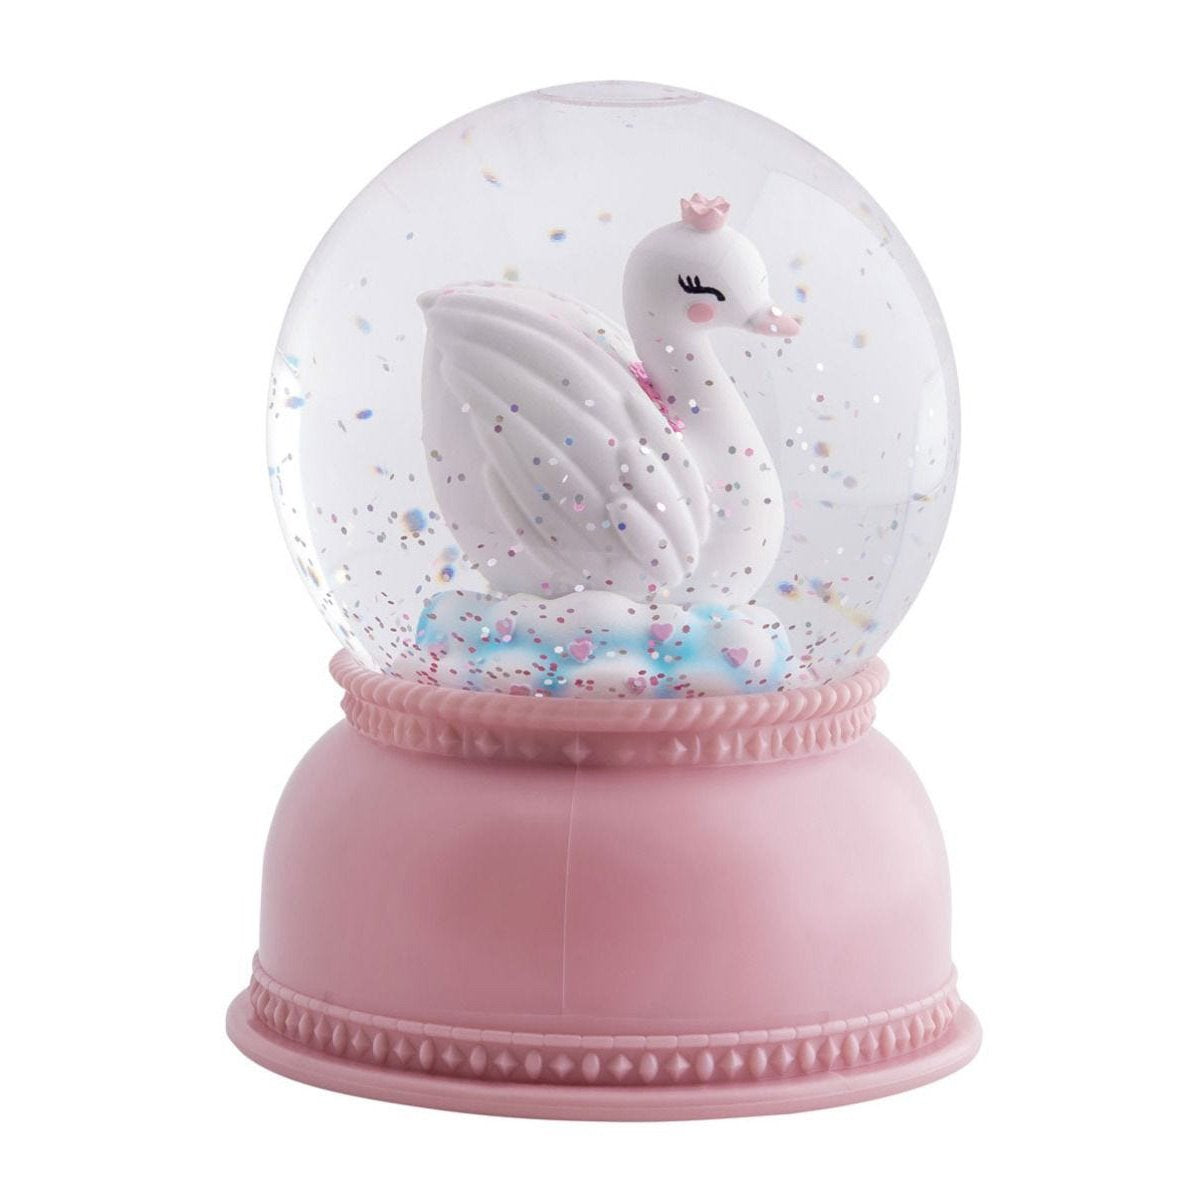 a-little-lovely-company-snowglobe-light-swan- (3)